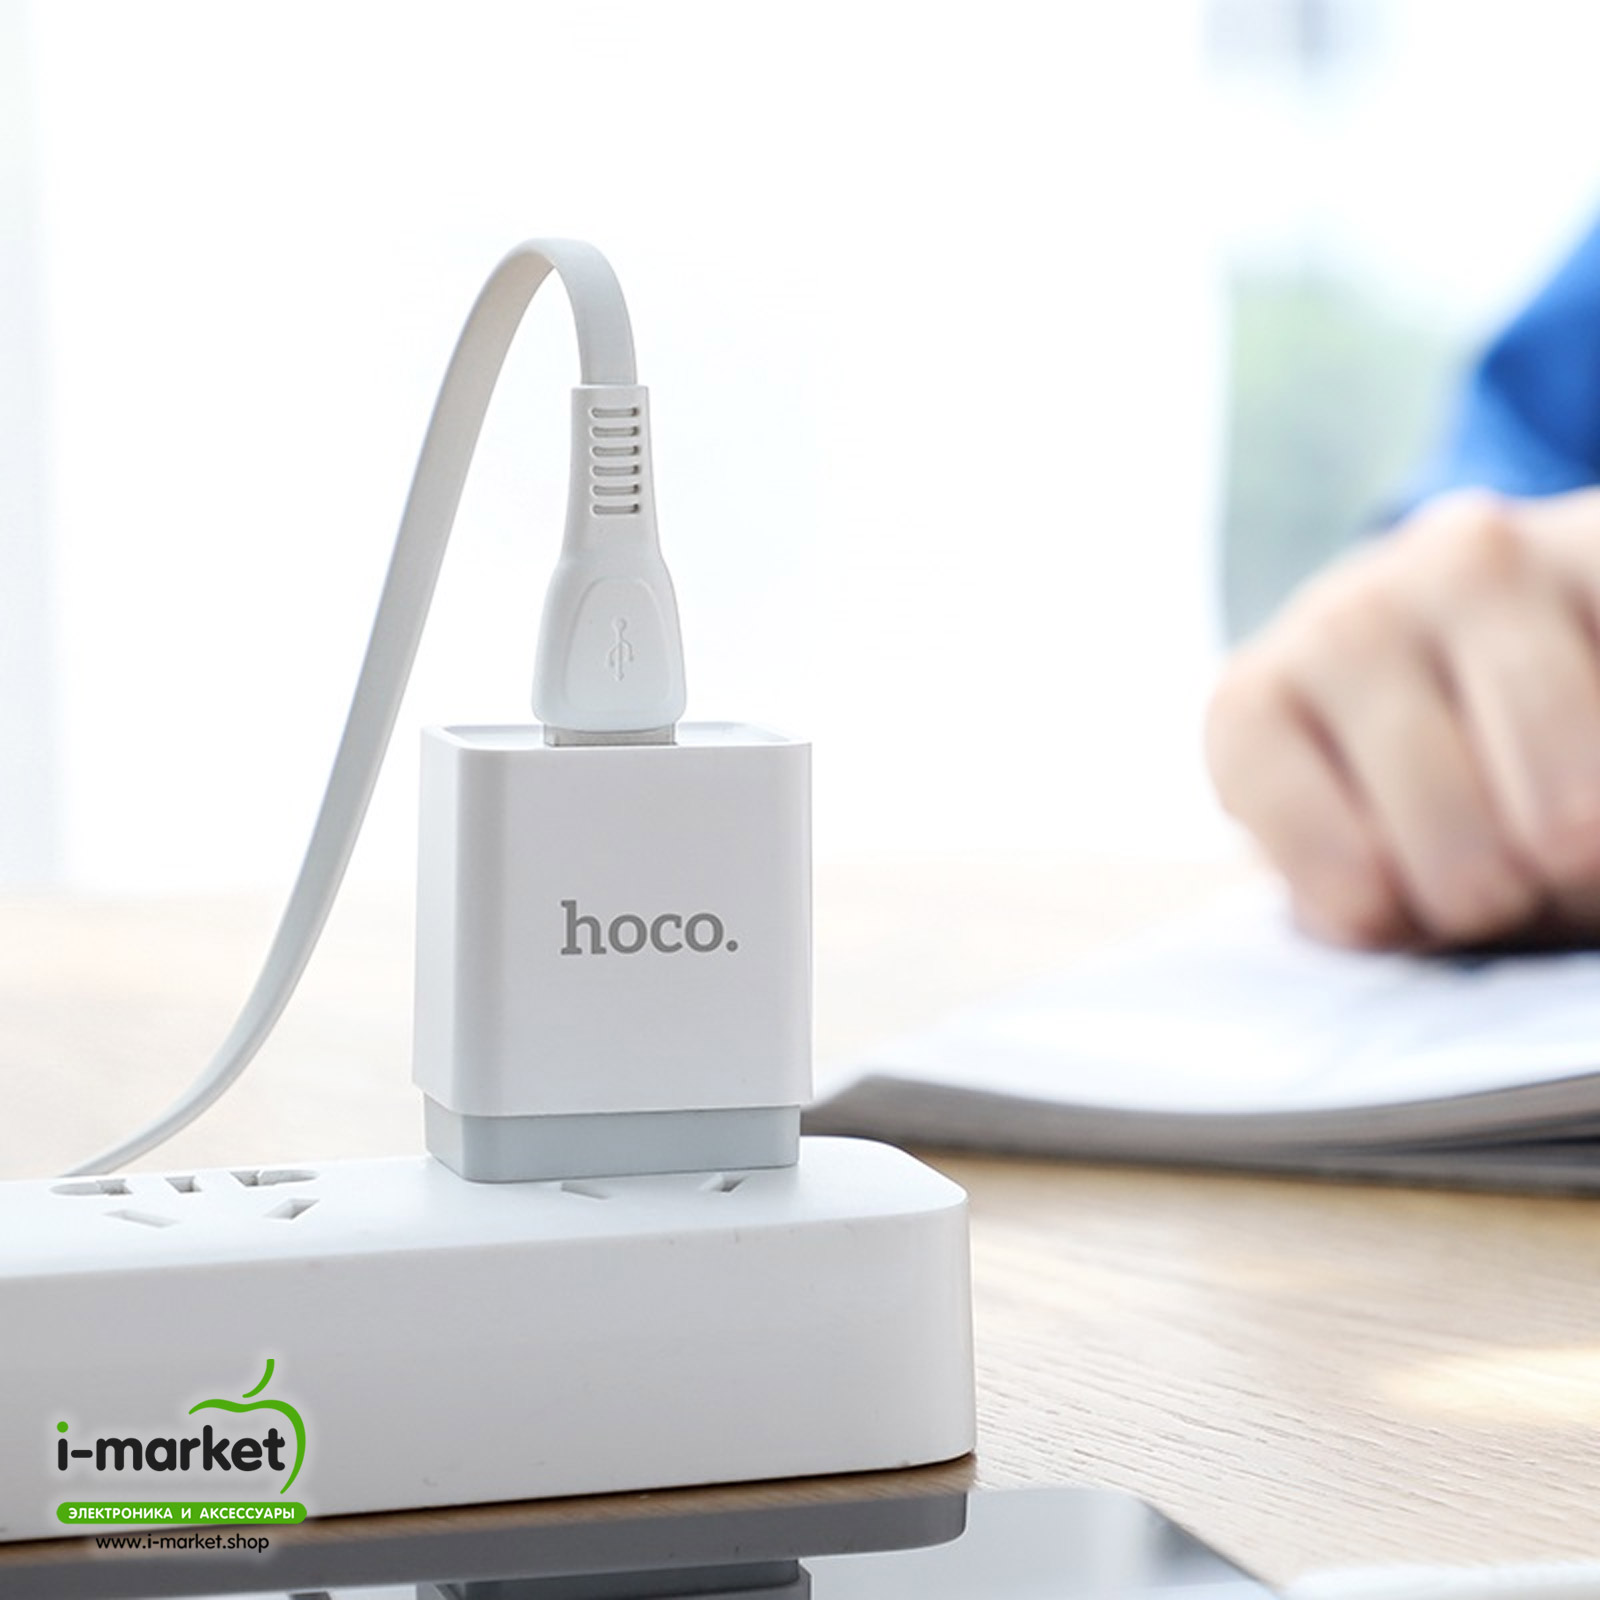 Кабель HOCO X40 Noah Micro USB, 2.4A, длина 1 метр, TPE оплетка, цвет белый